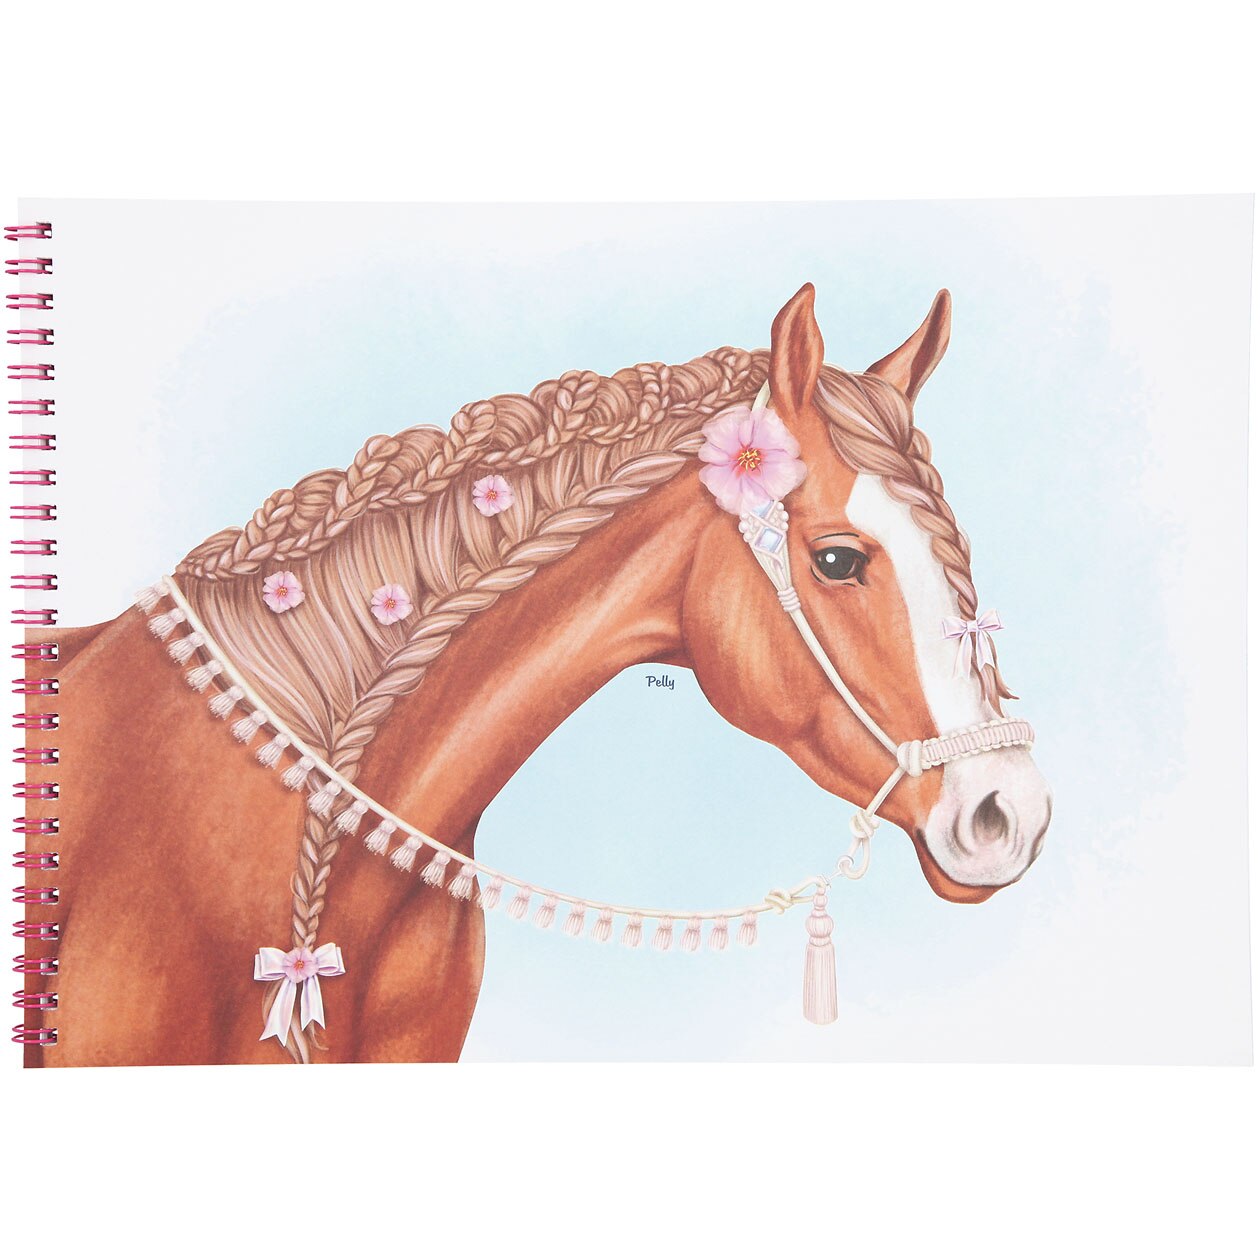 Альбом лошадки. Miss Melody лошади. Раскрашивание лошади из глины. Мисс Мелоди Style your Horse. Лошадь рисунок карандашом.